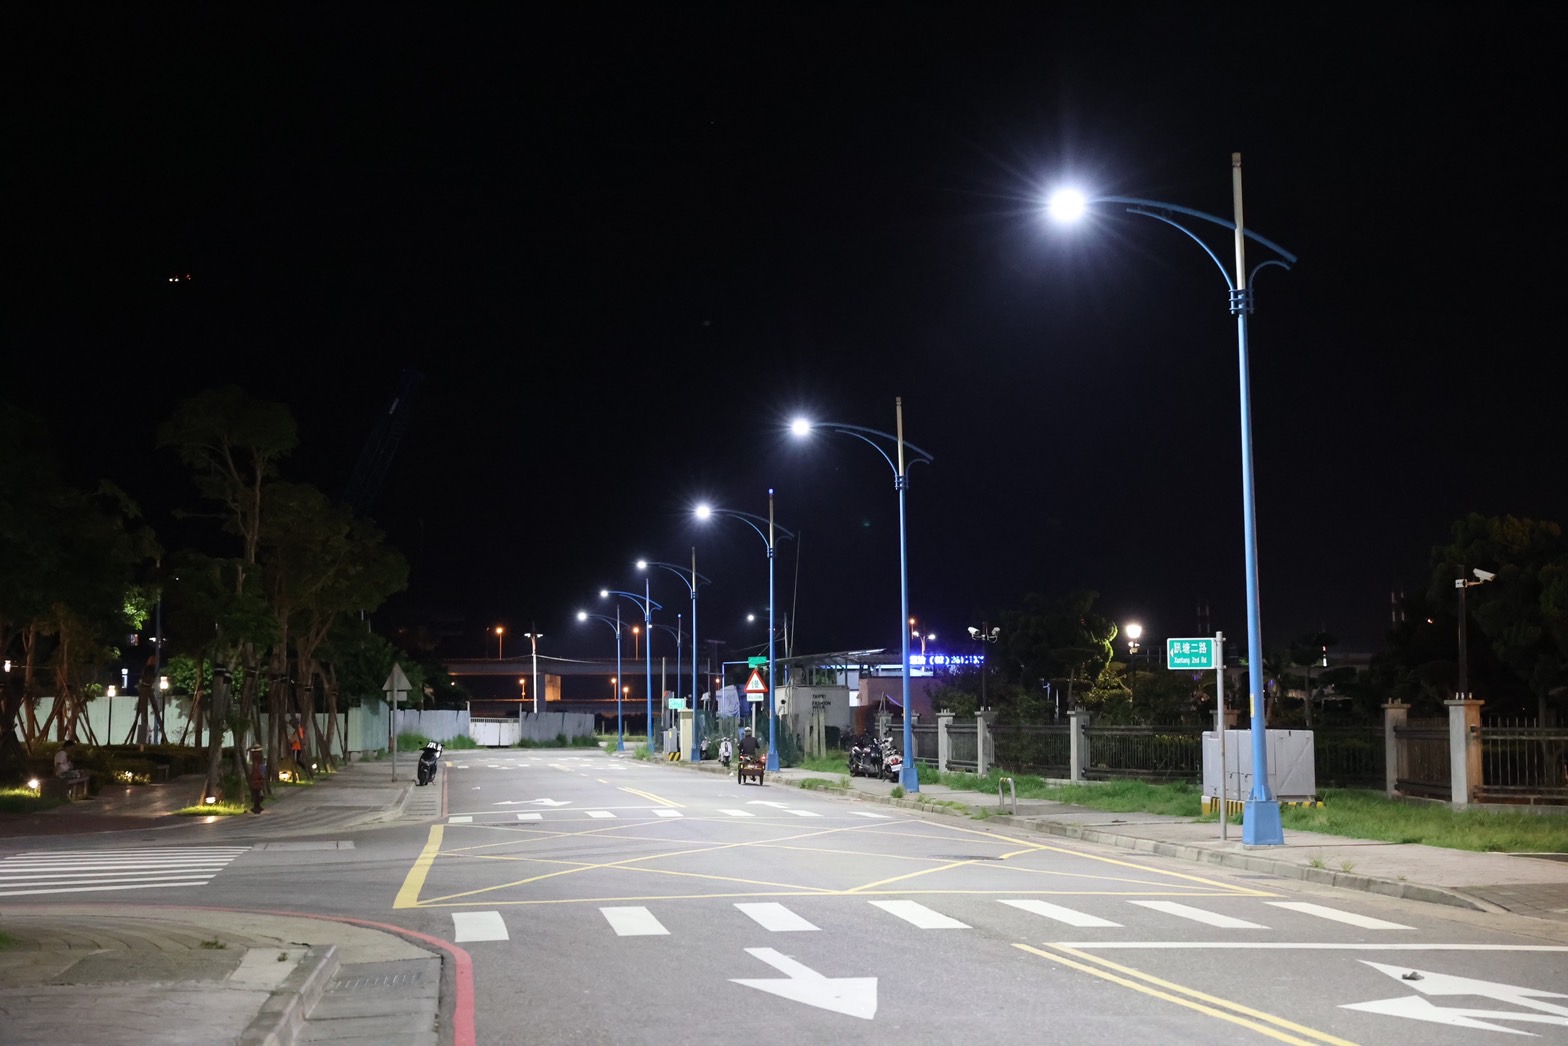 新北市政府「節能路燈換裝計畫」1、2階段至今已完成換裝6.3萬盞故障率偏高的LED燈，今年10月10日起至明年10月9日啟動第3階段，全面汰換剩餘19.3萬盞路燈，為用路人打造安全、舒適、便利的用路環境。